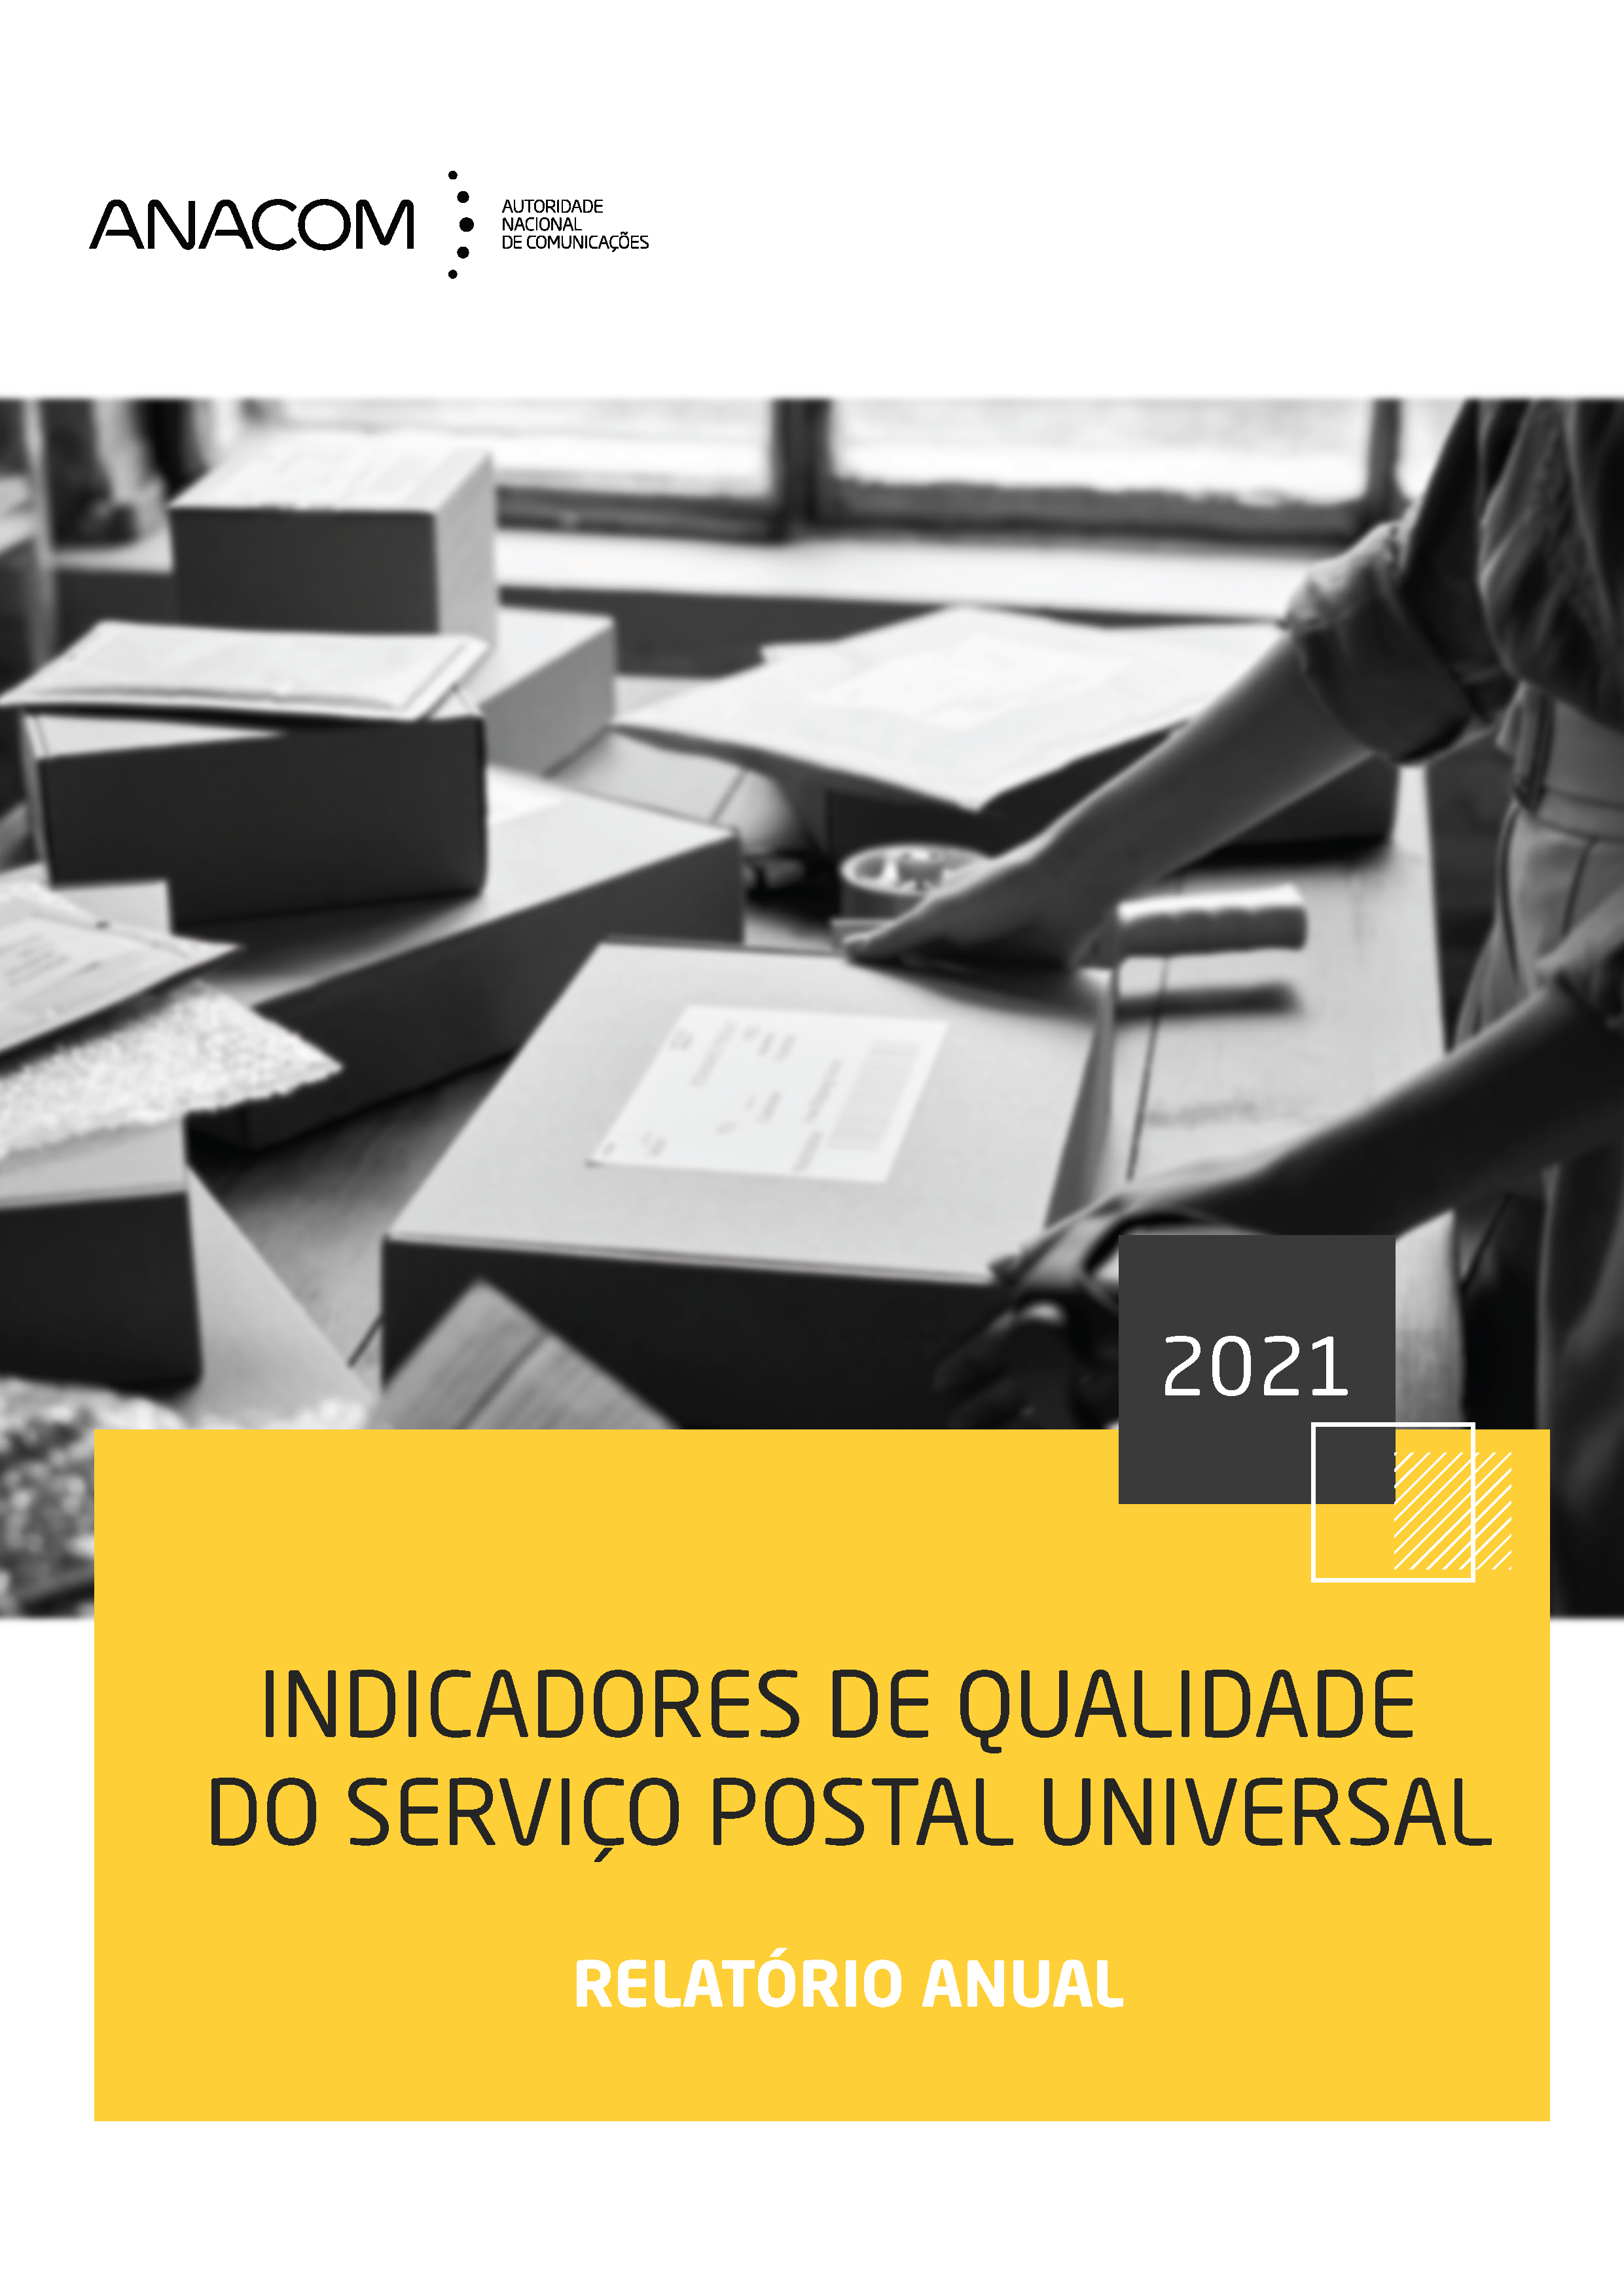 Valores dos IQS do serviço postal universal verificados pelos CTT - Correios de Portugal em 2021